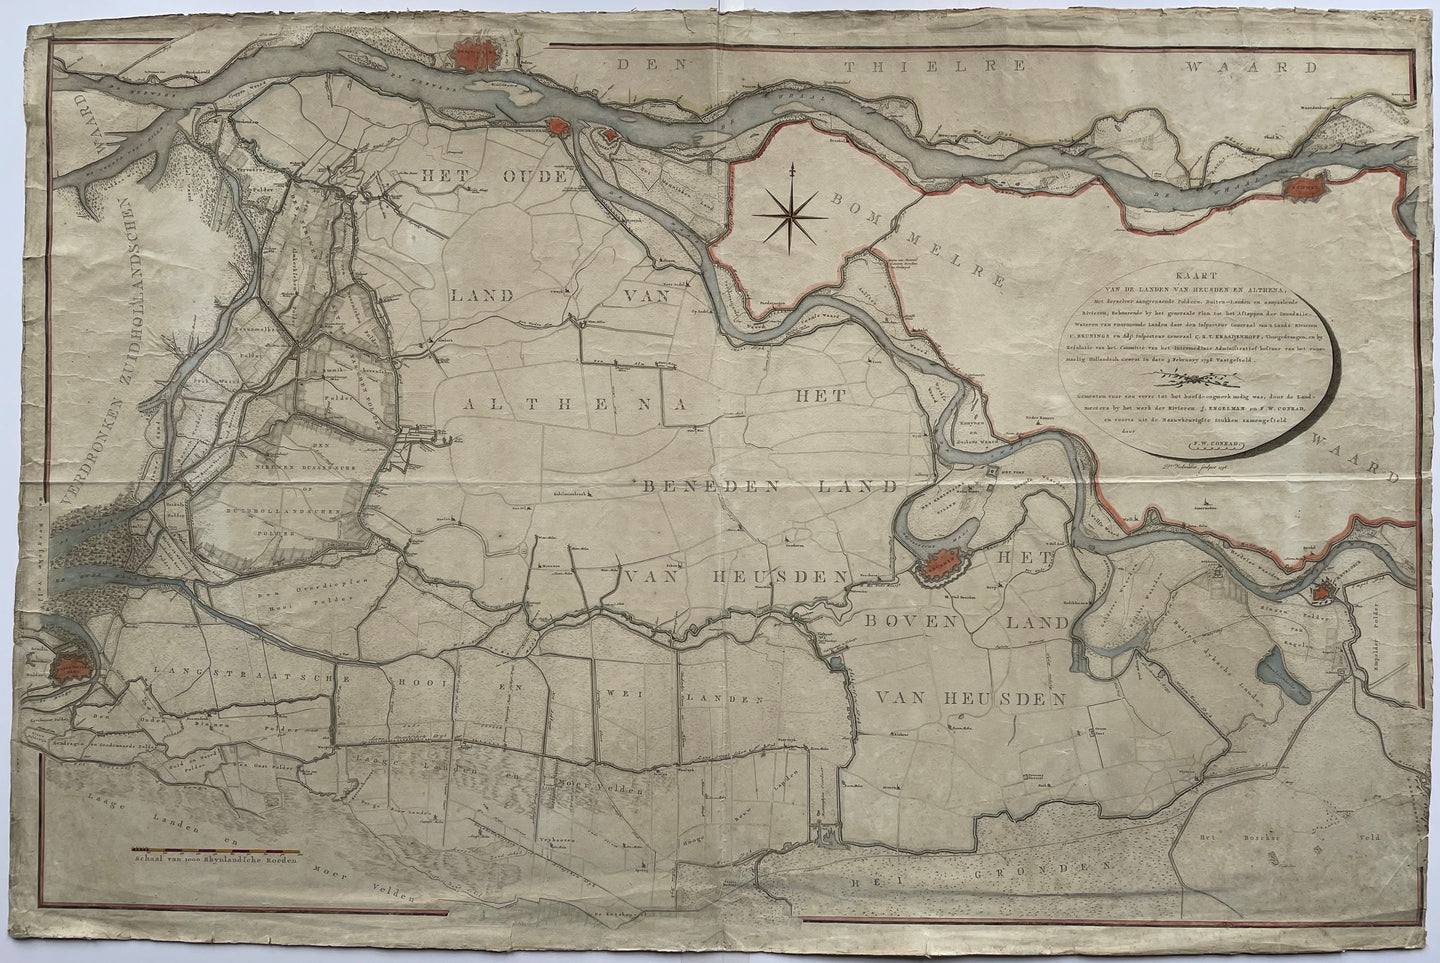 Noord-Brabant Heusden Land van Heusden en Altena - D Veelwaard FW Conrad - 1798